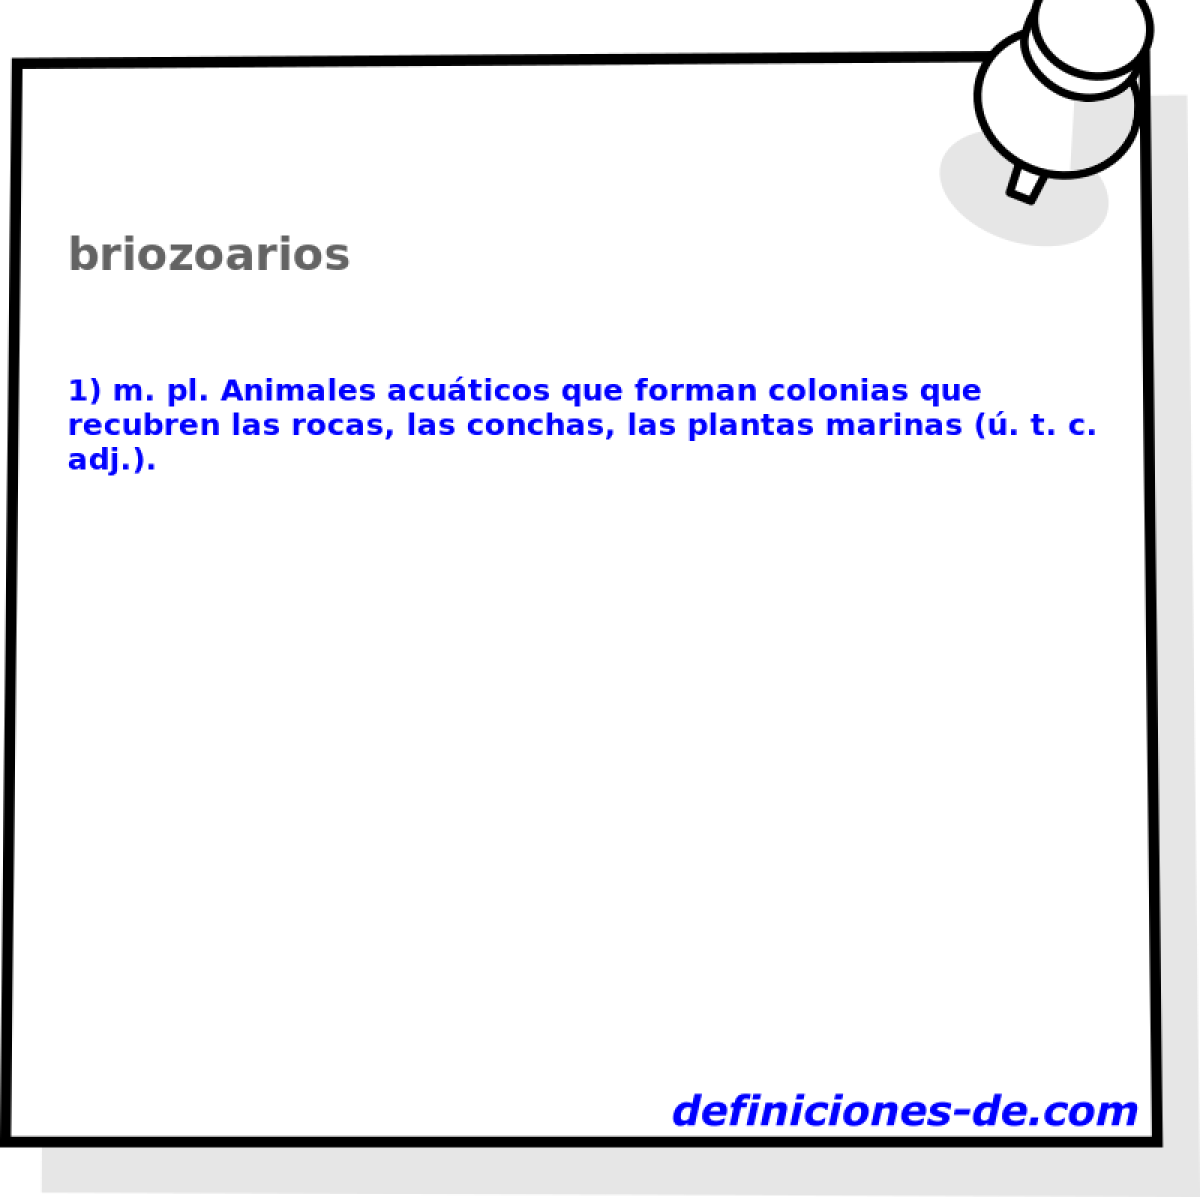 briozoarios 